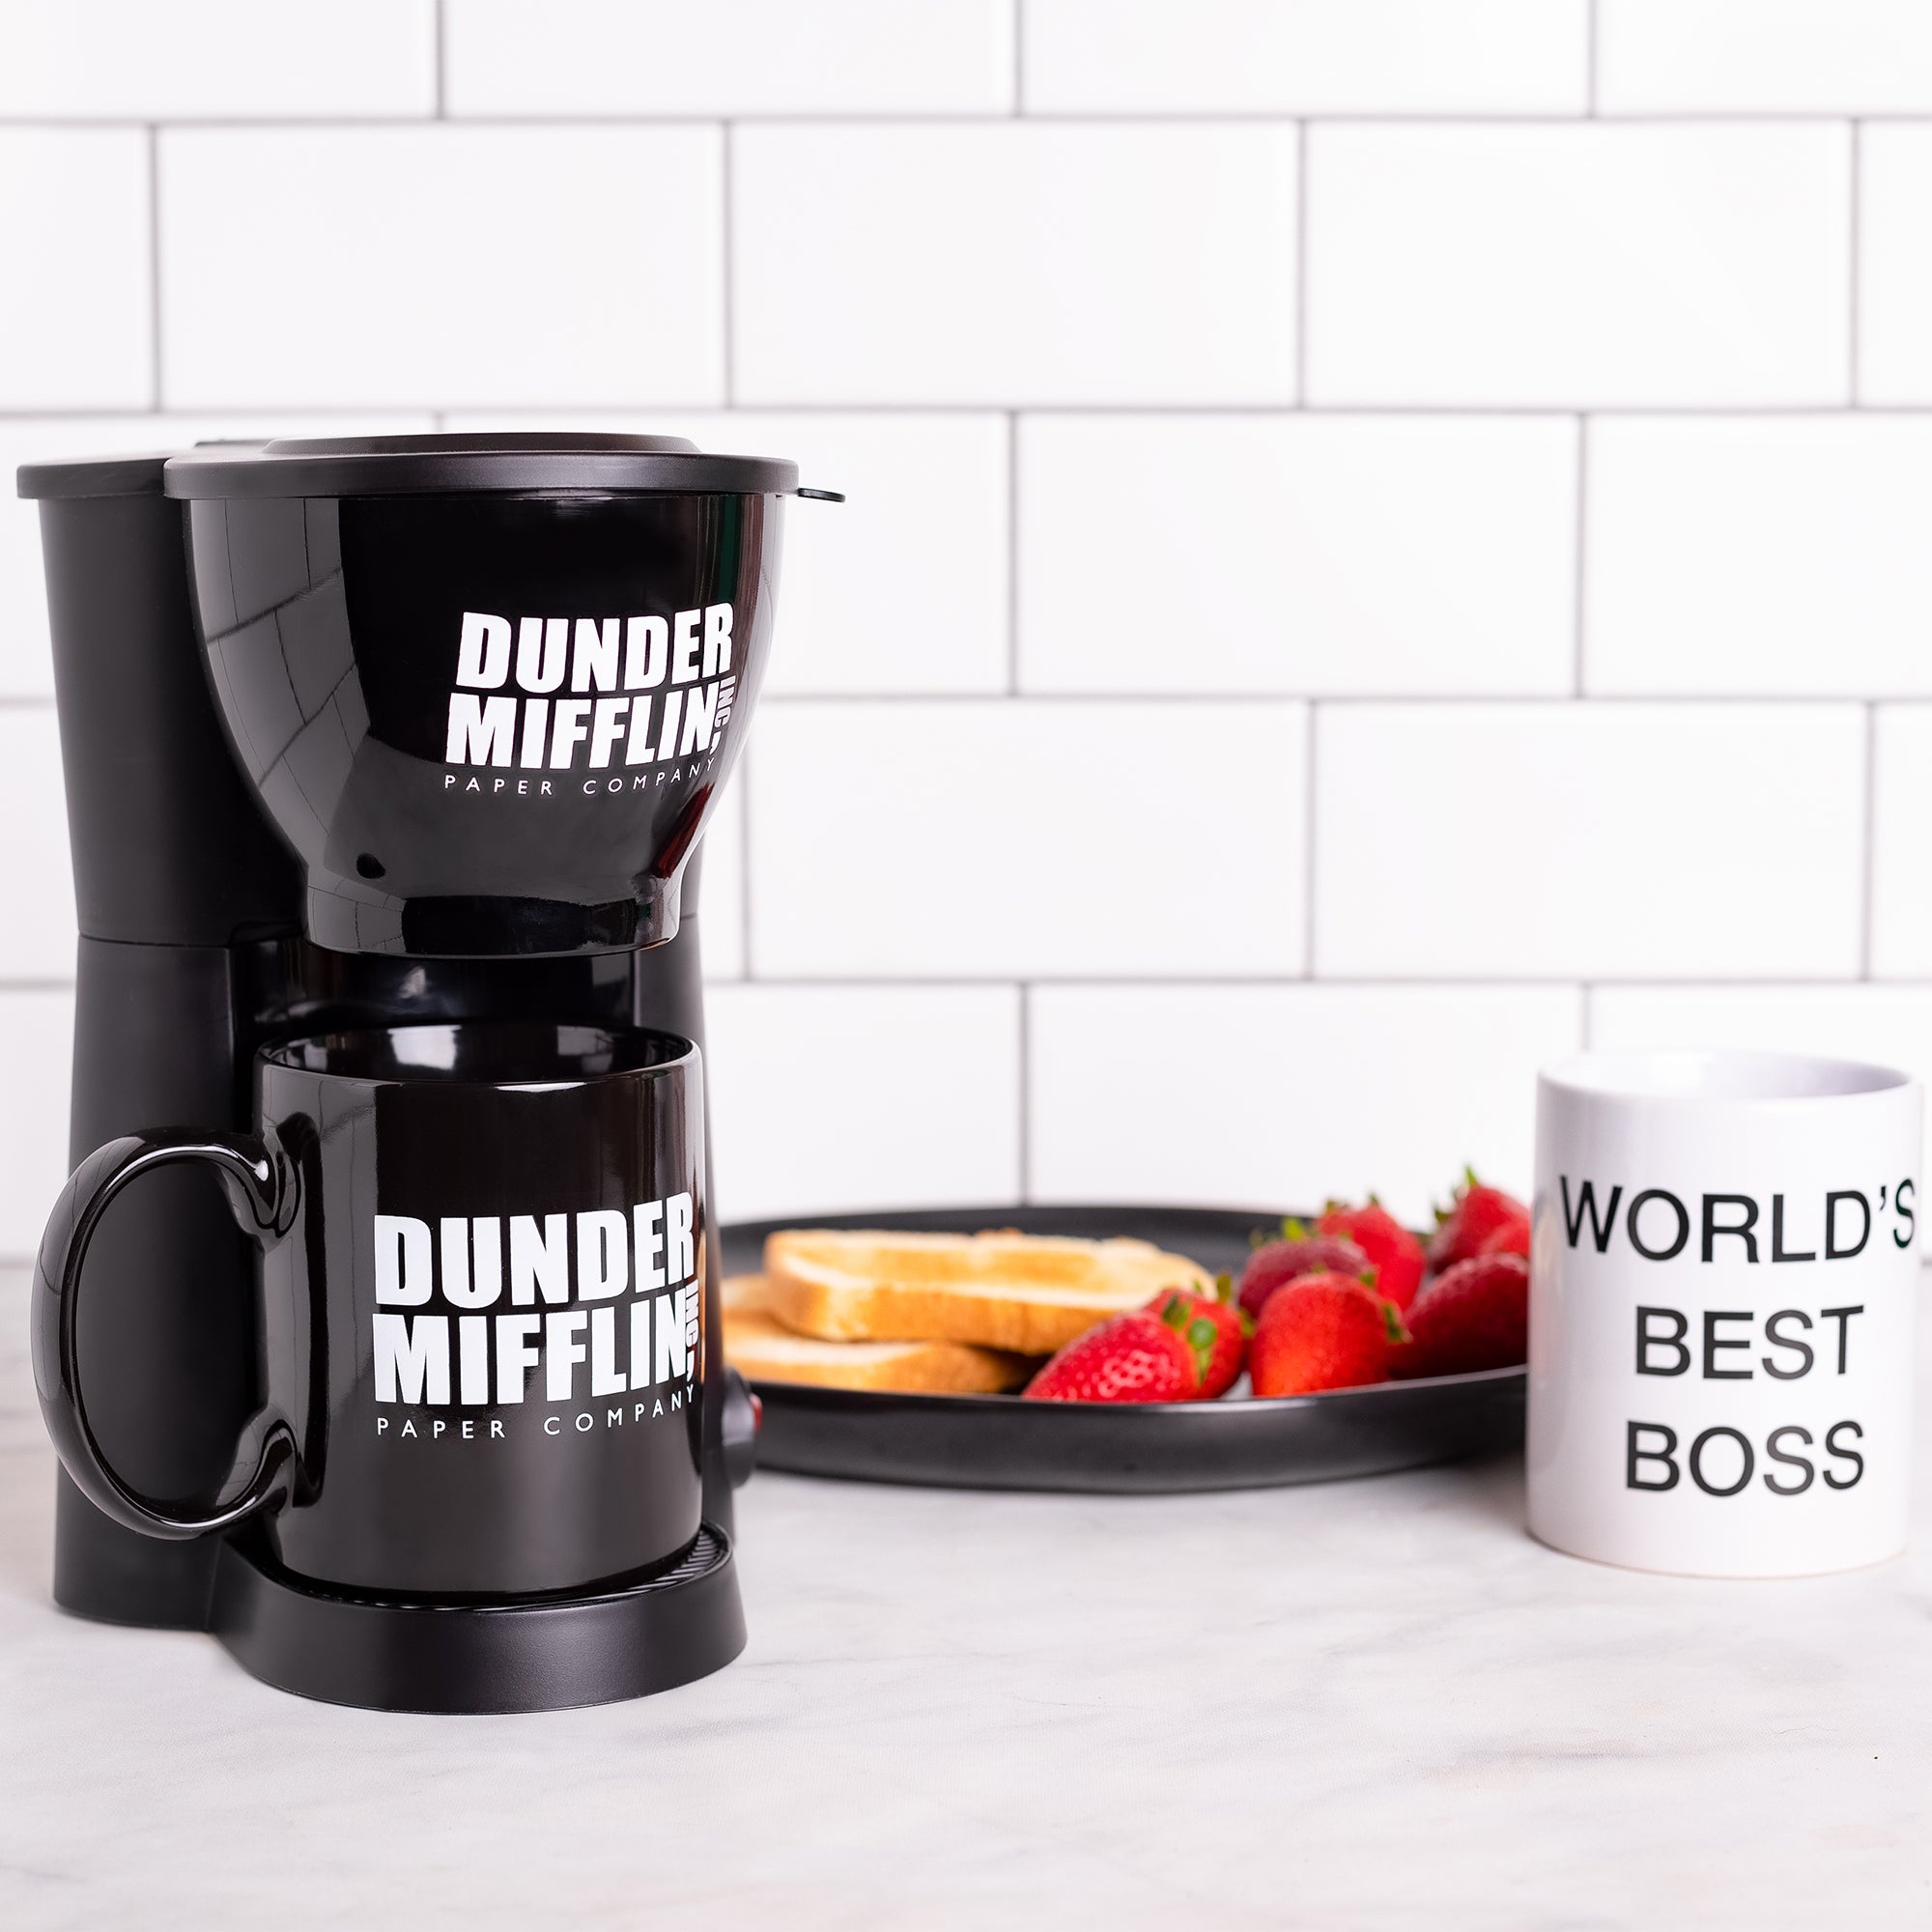 Best office coffee maker?, Forum